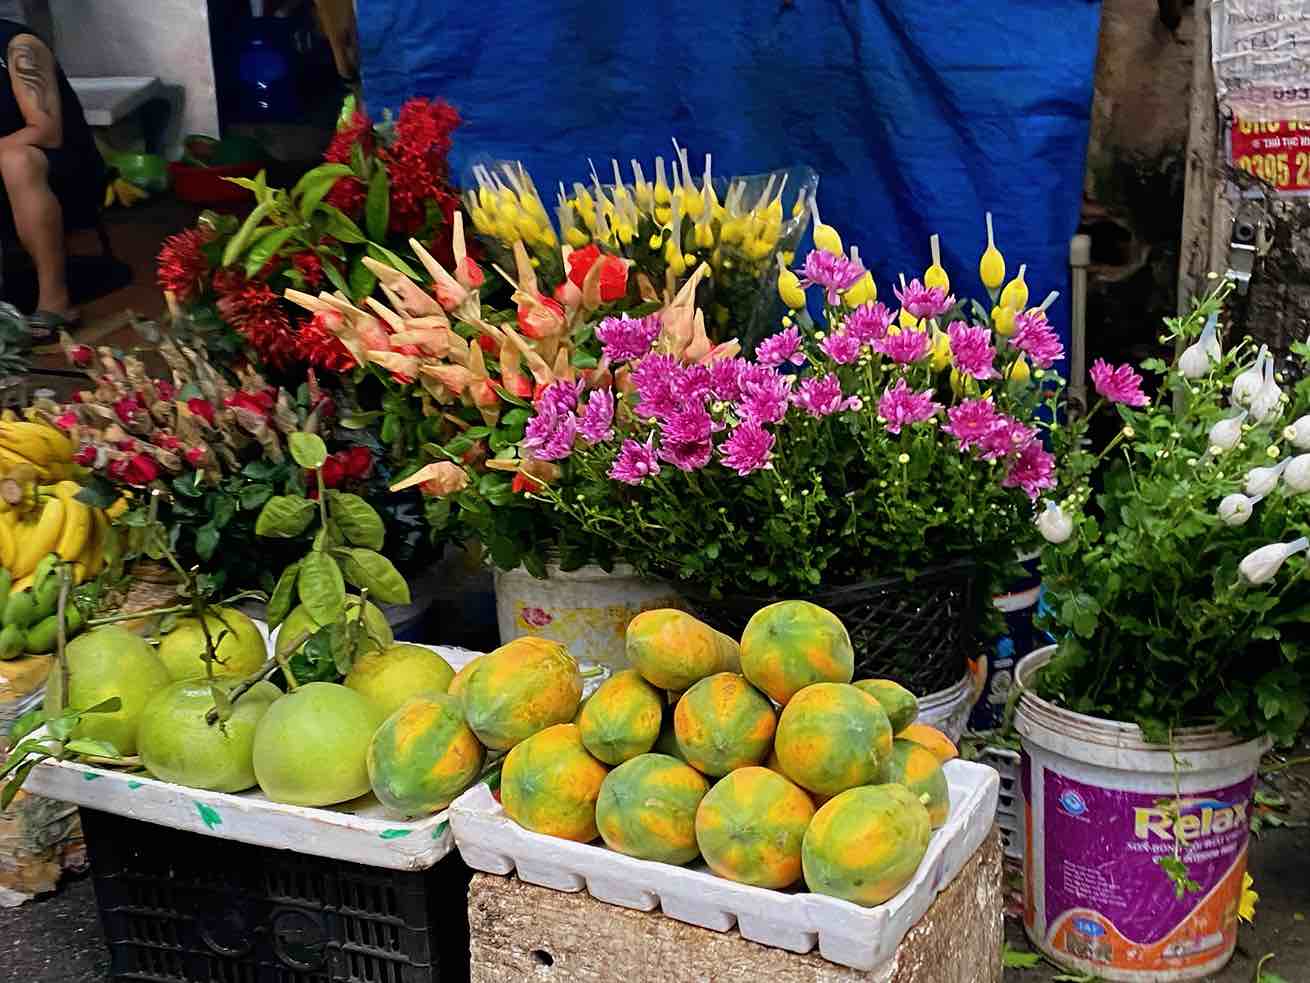 Hoa quả tại các chợ truyền thống tăng 20-30% so với tuần trước. Ảnh: Linh Anh